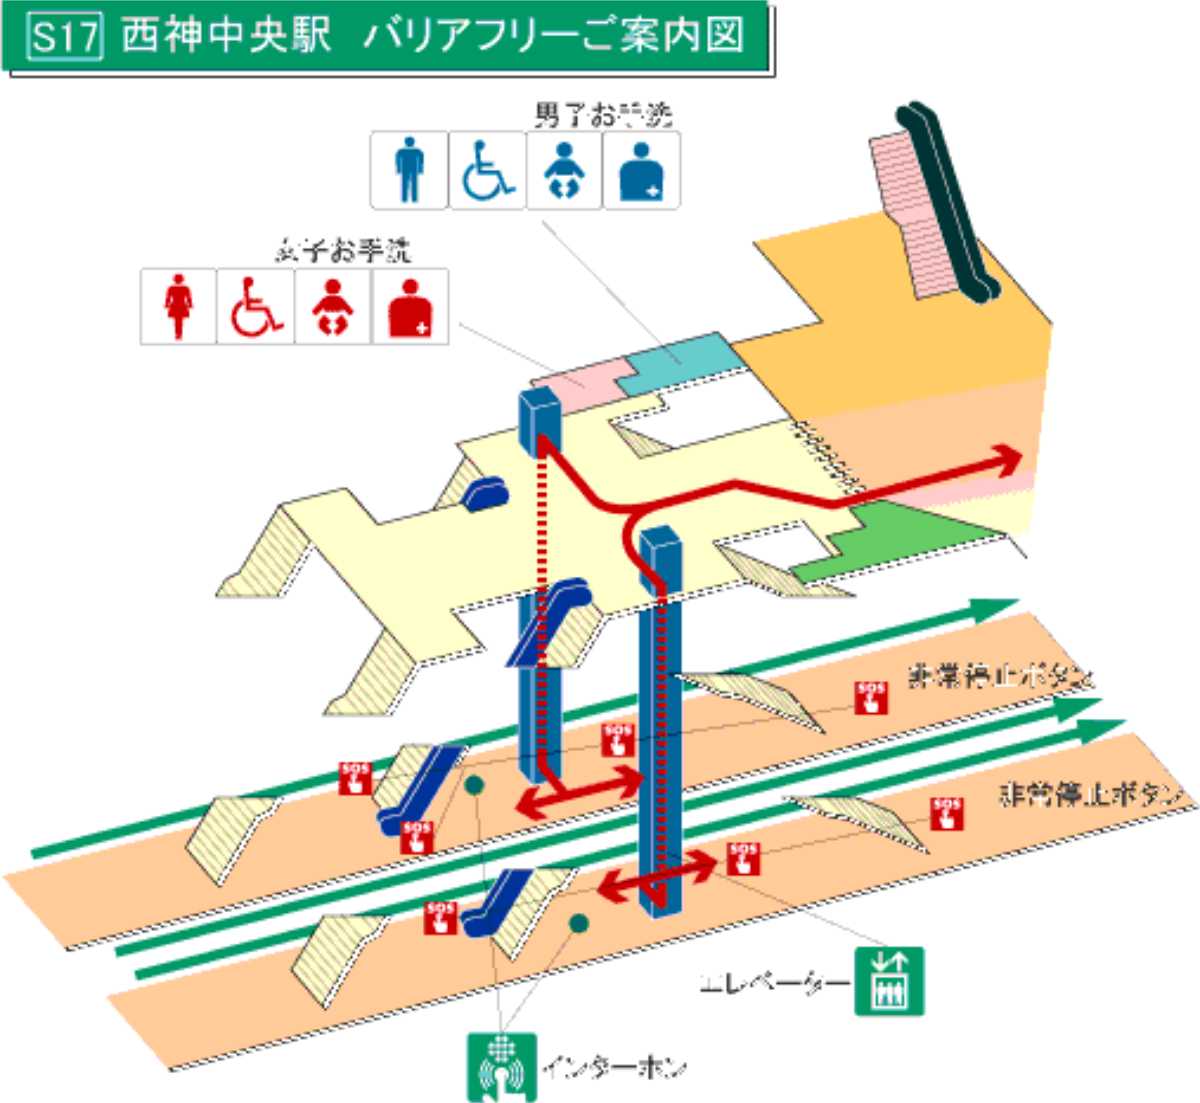 西神中央駅でベビーカーのレンタルサービス「ベビカル」がスタート　神戸市 [画像]